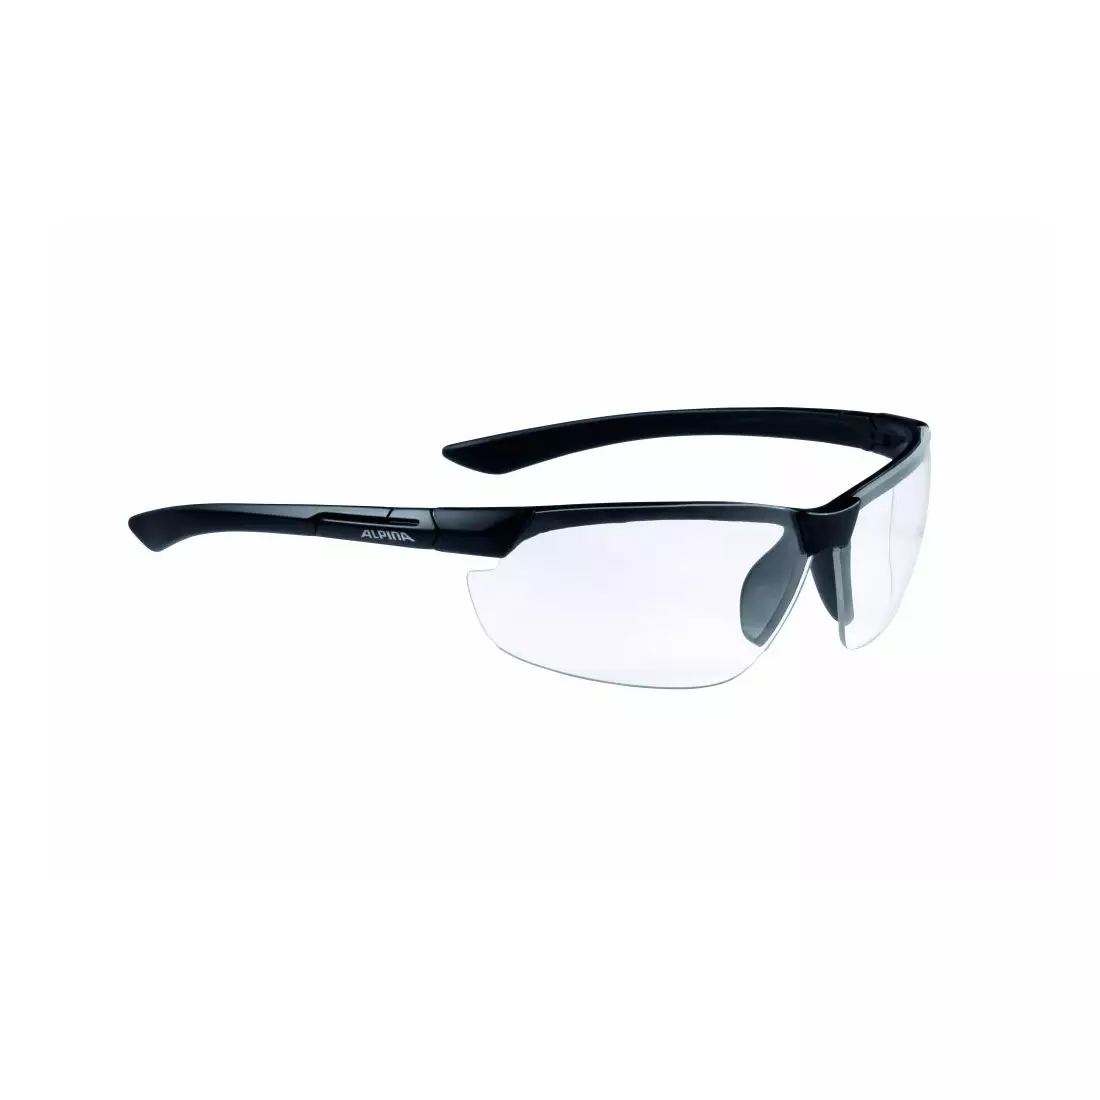 ALPINA Sportbrillen draff black matt, Objektiv S0 A8558431